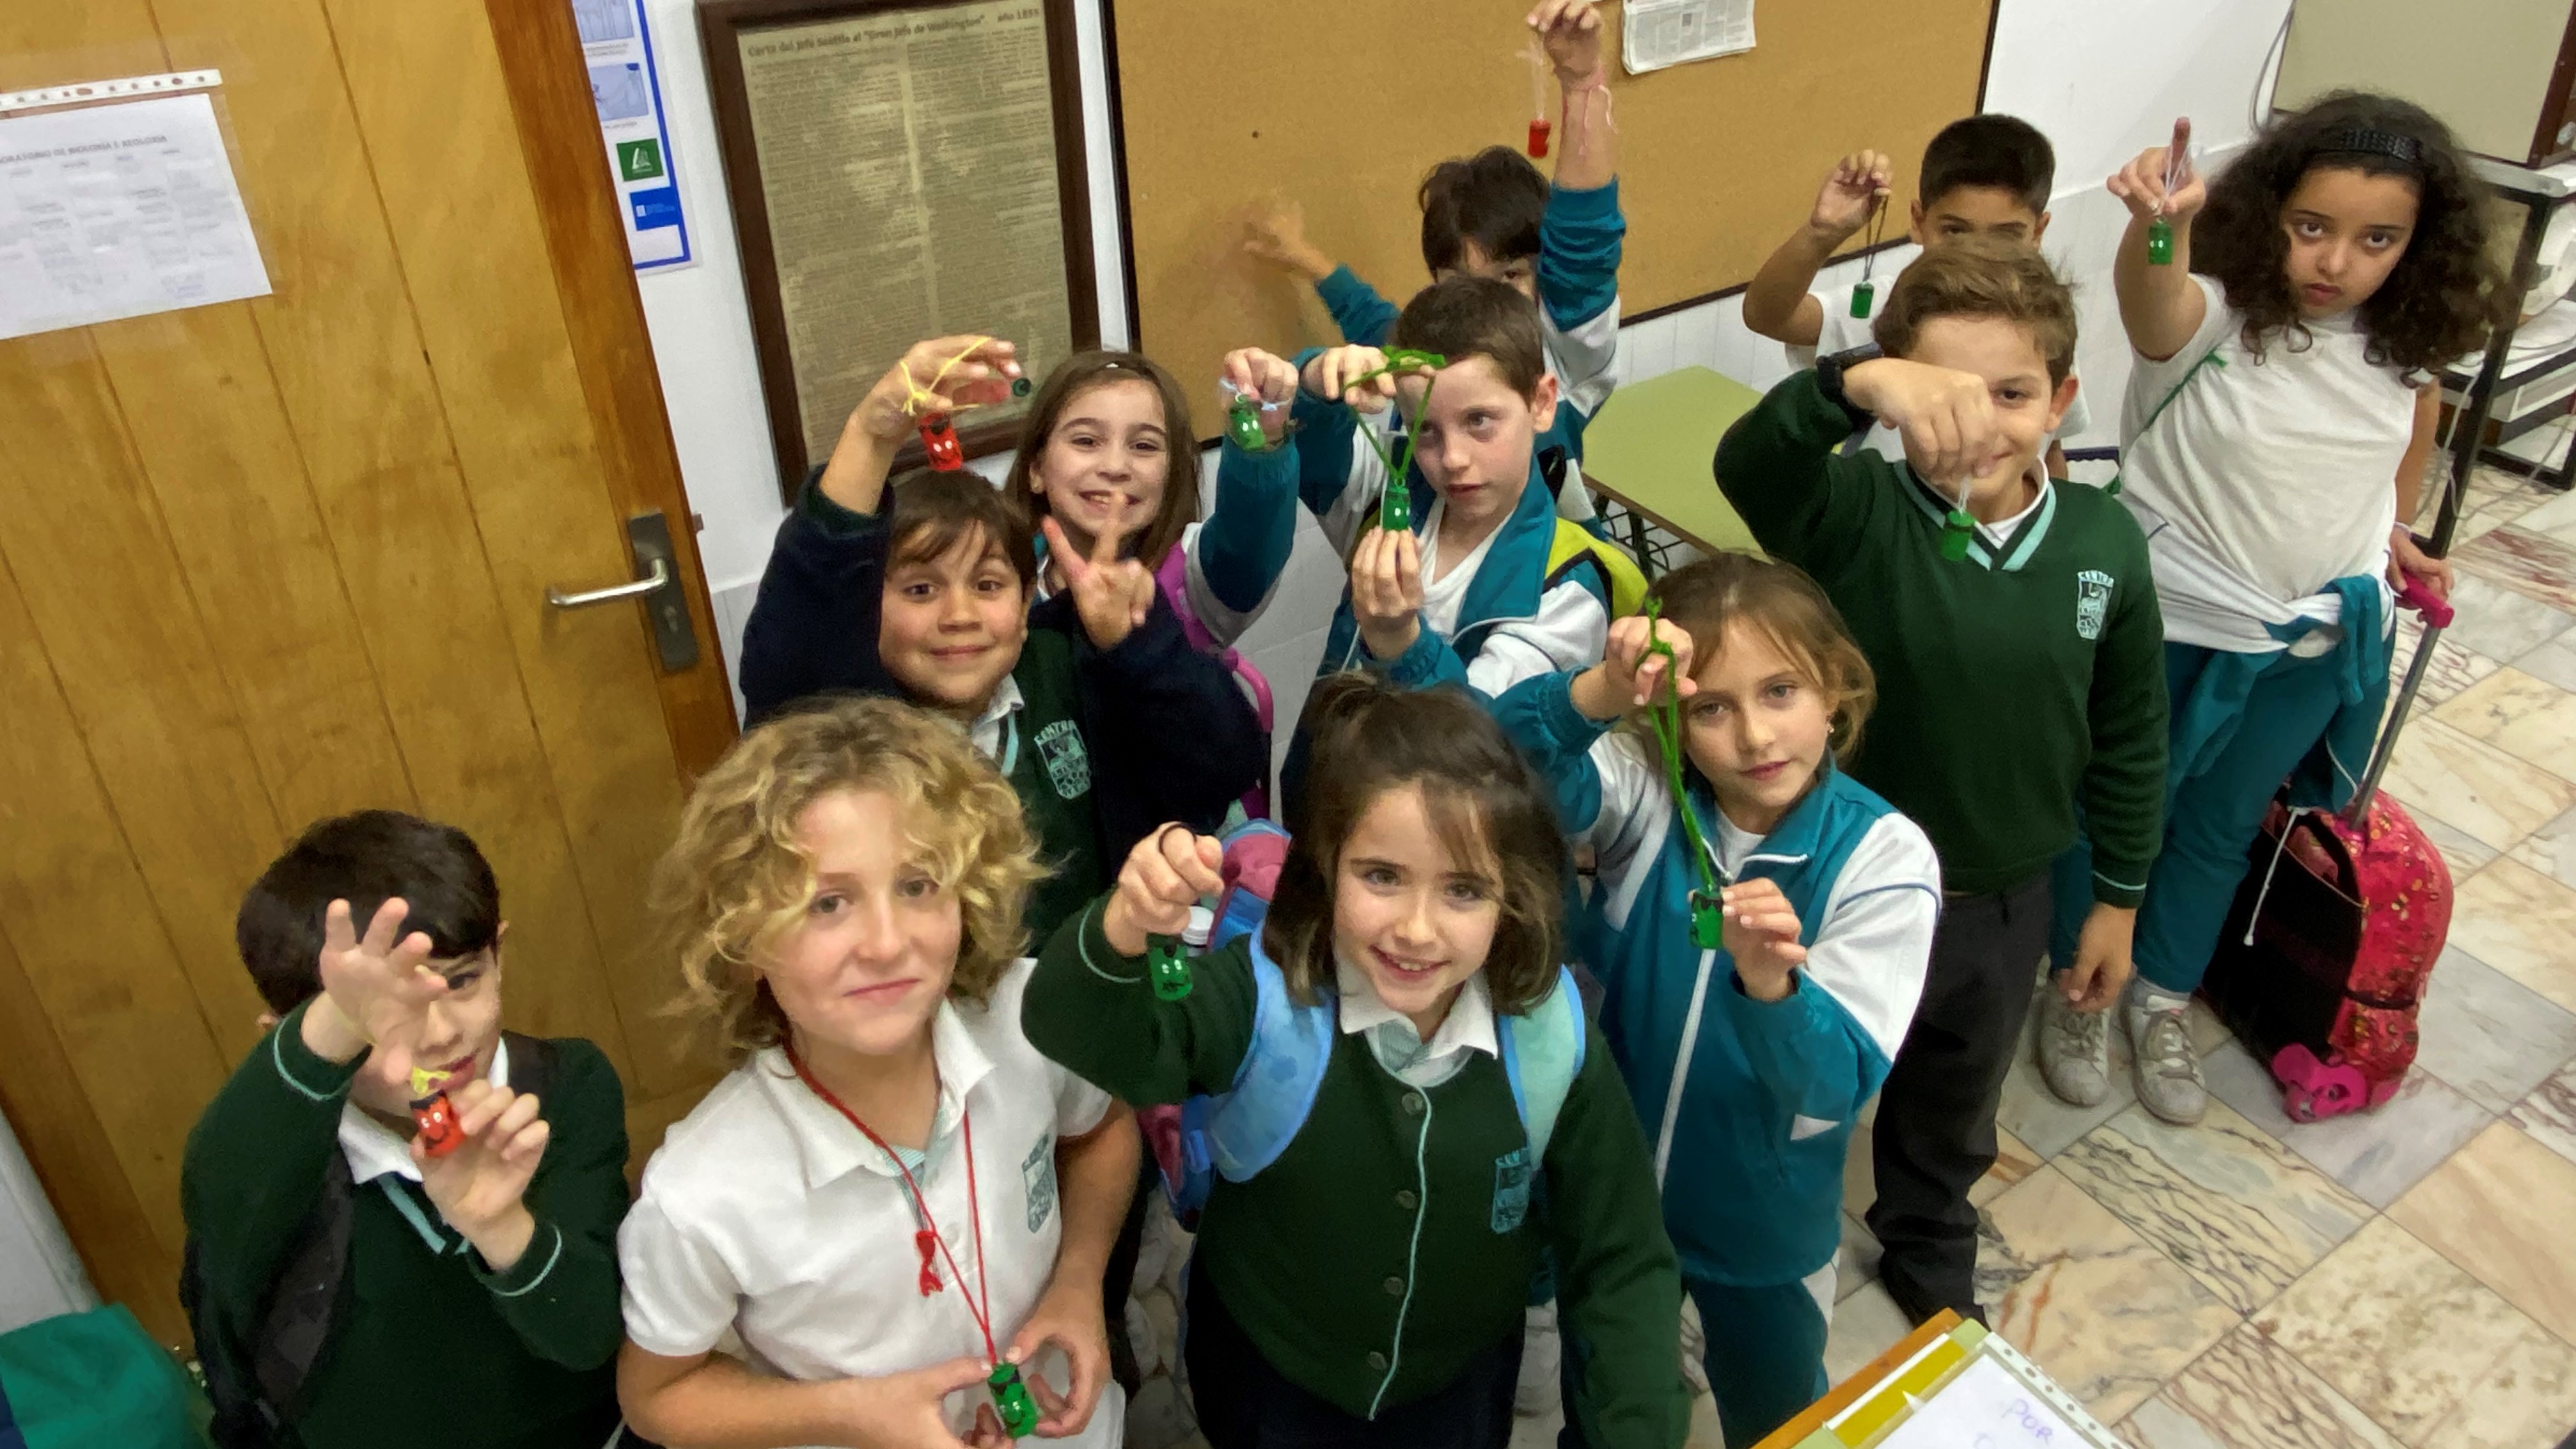 Reciclaje para niños: actividades, manualidades y enseñanza - #GreenBlog